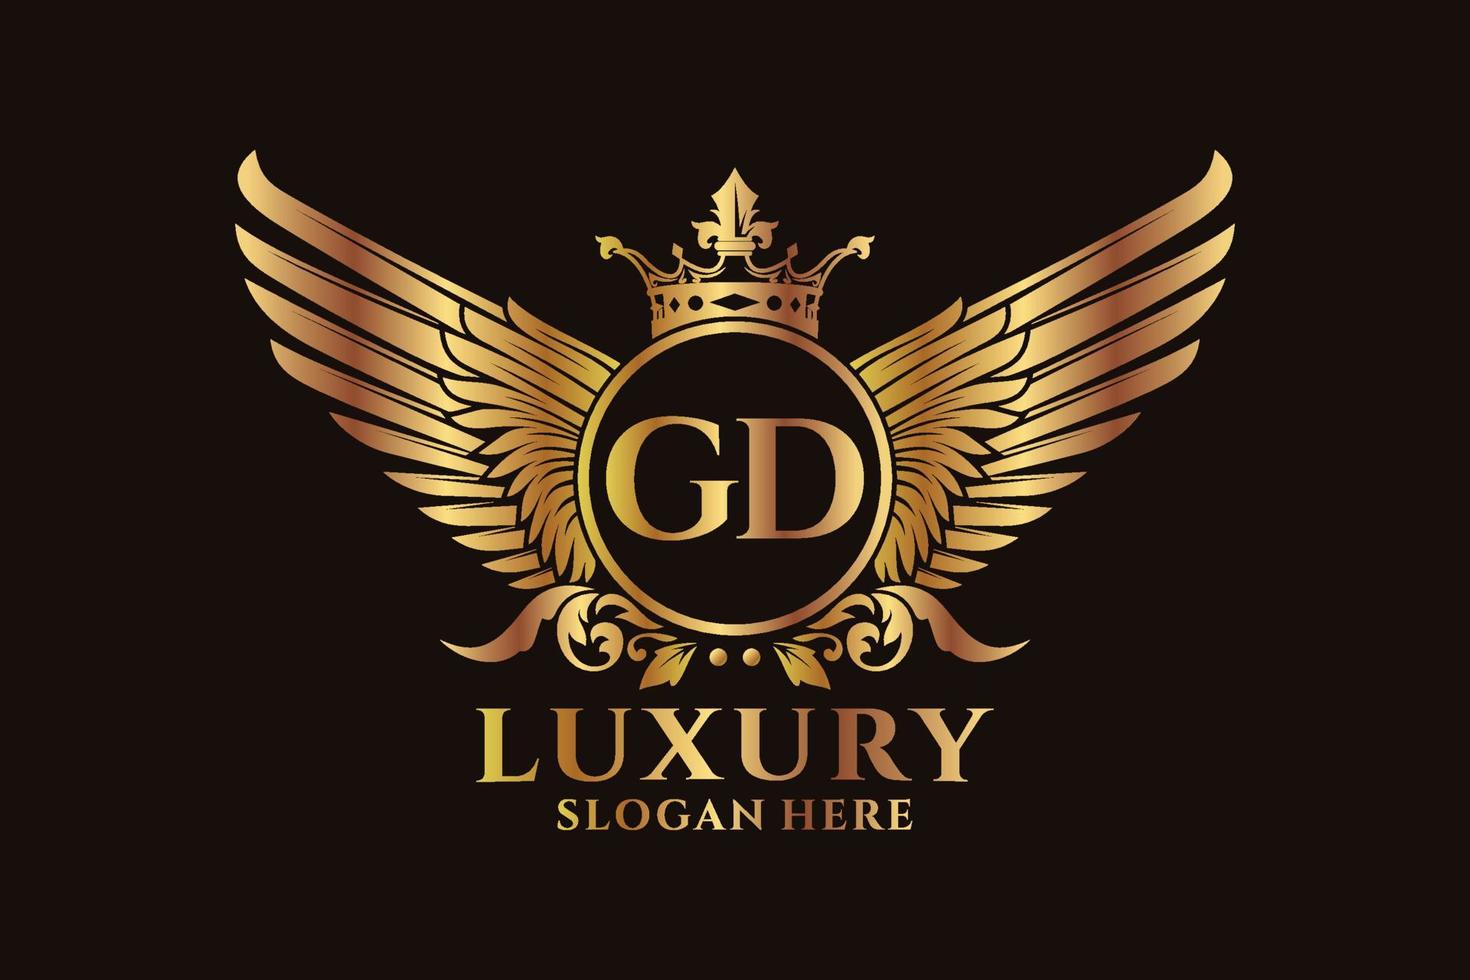 lettre d'aile royale de luxe gd crête logo couleur or vecteur, logo de victoire, logo de crête, logo d'aile, modèle de logo vectoriel. vecteur